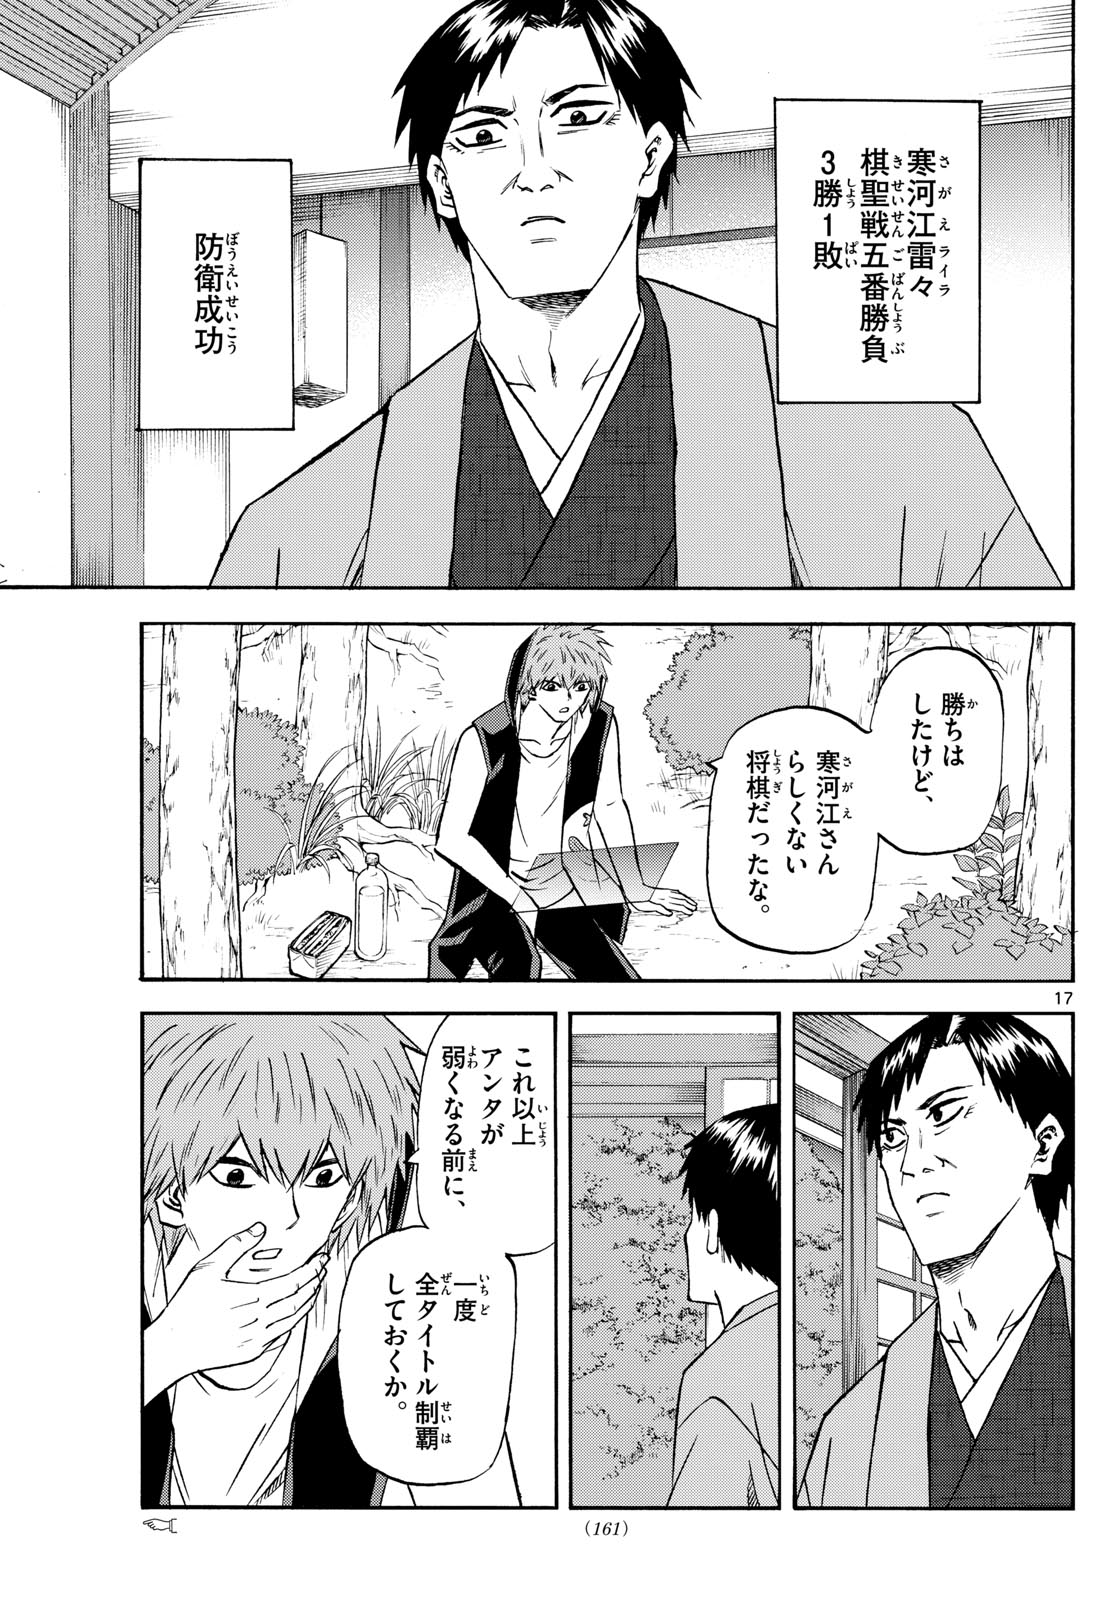 Tatsu to Ichigo - Chapter 195 - Page 17